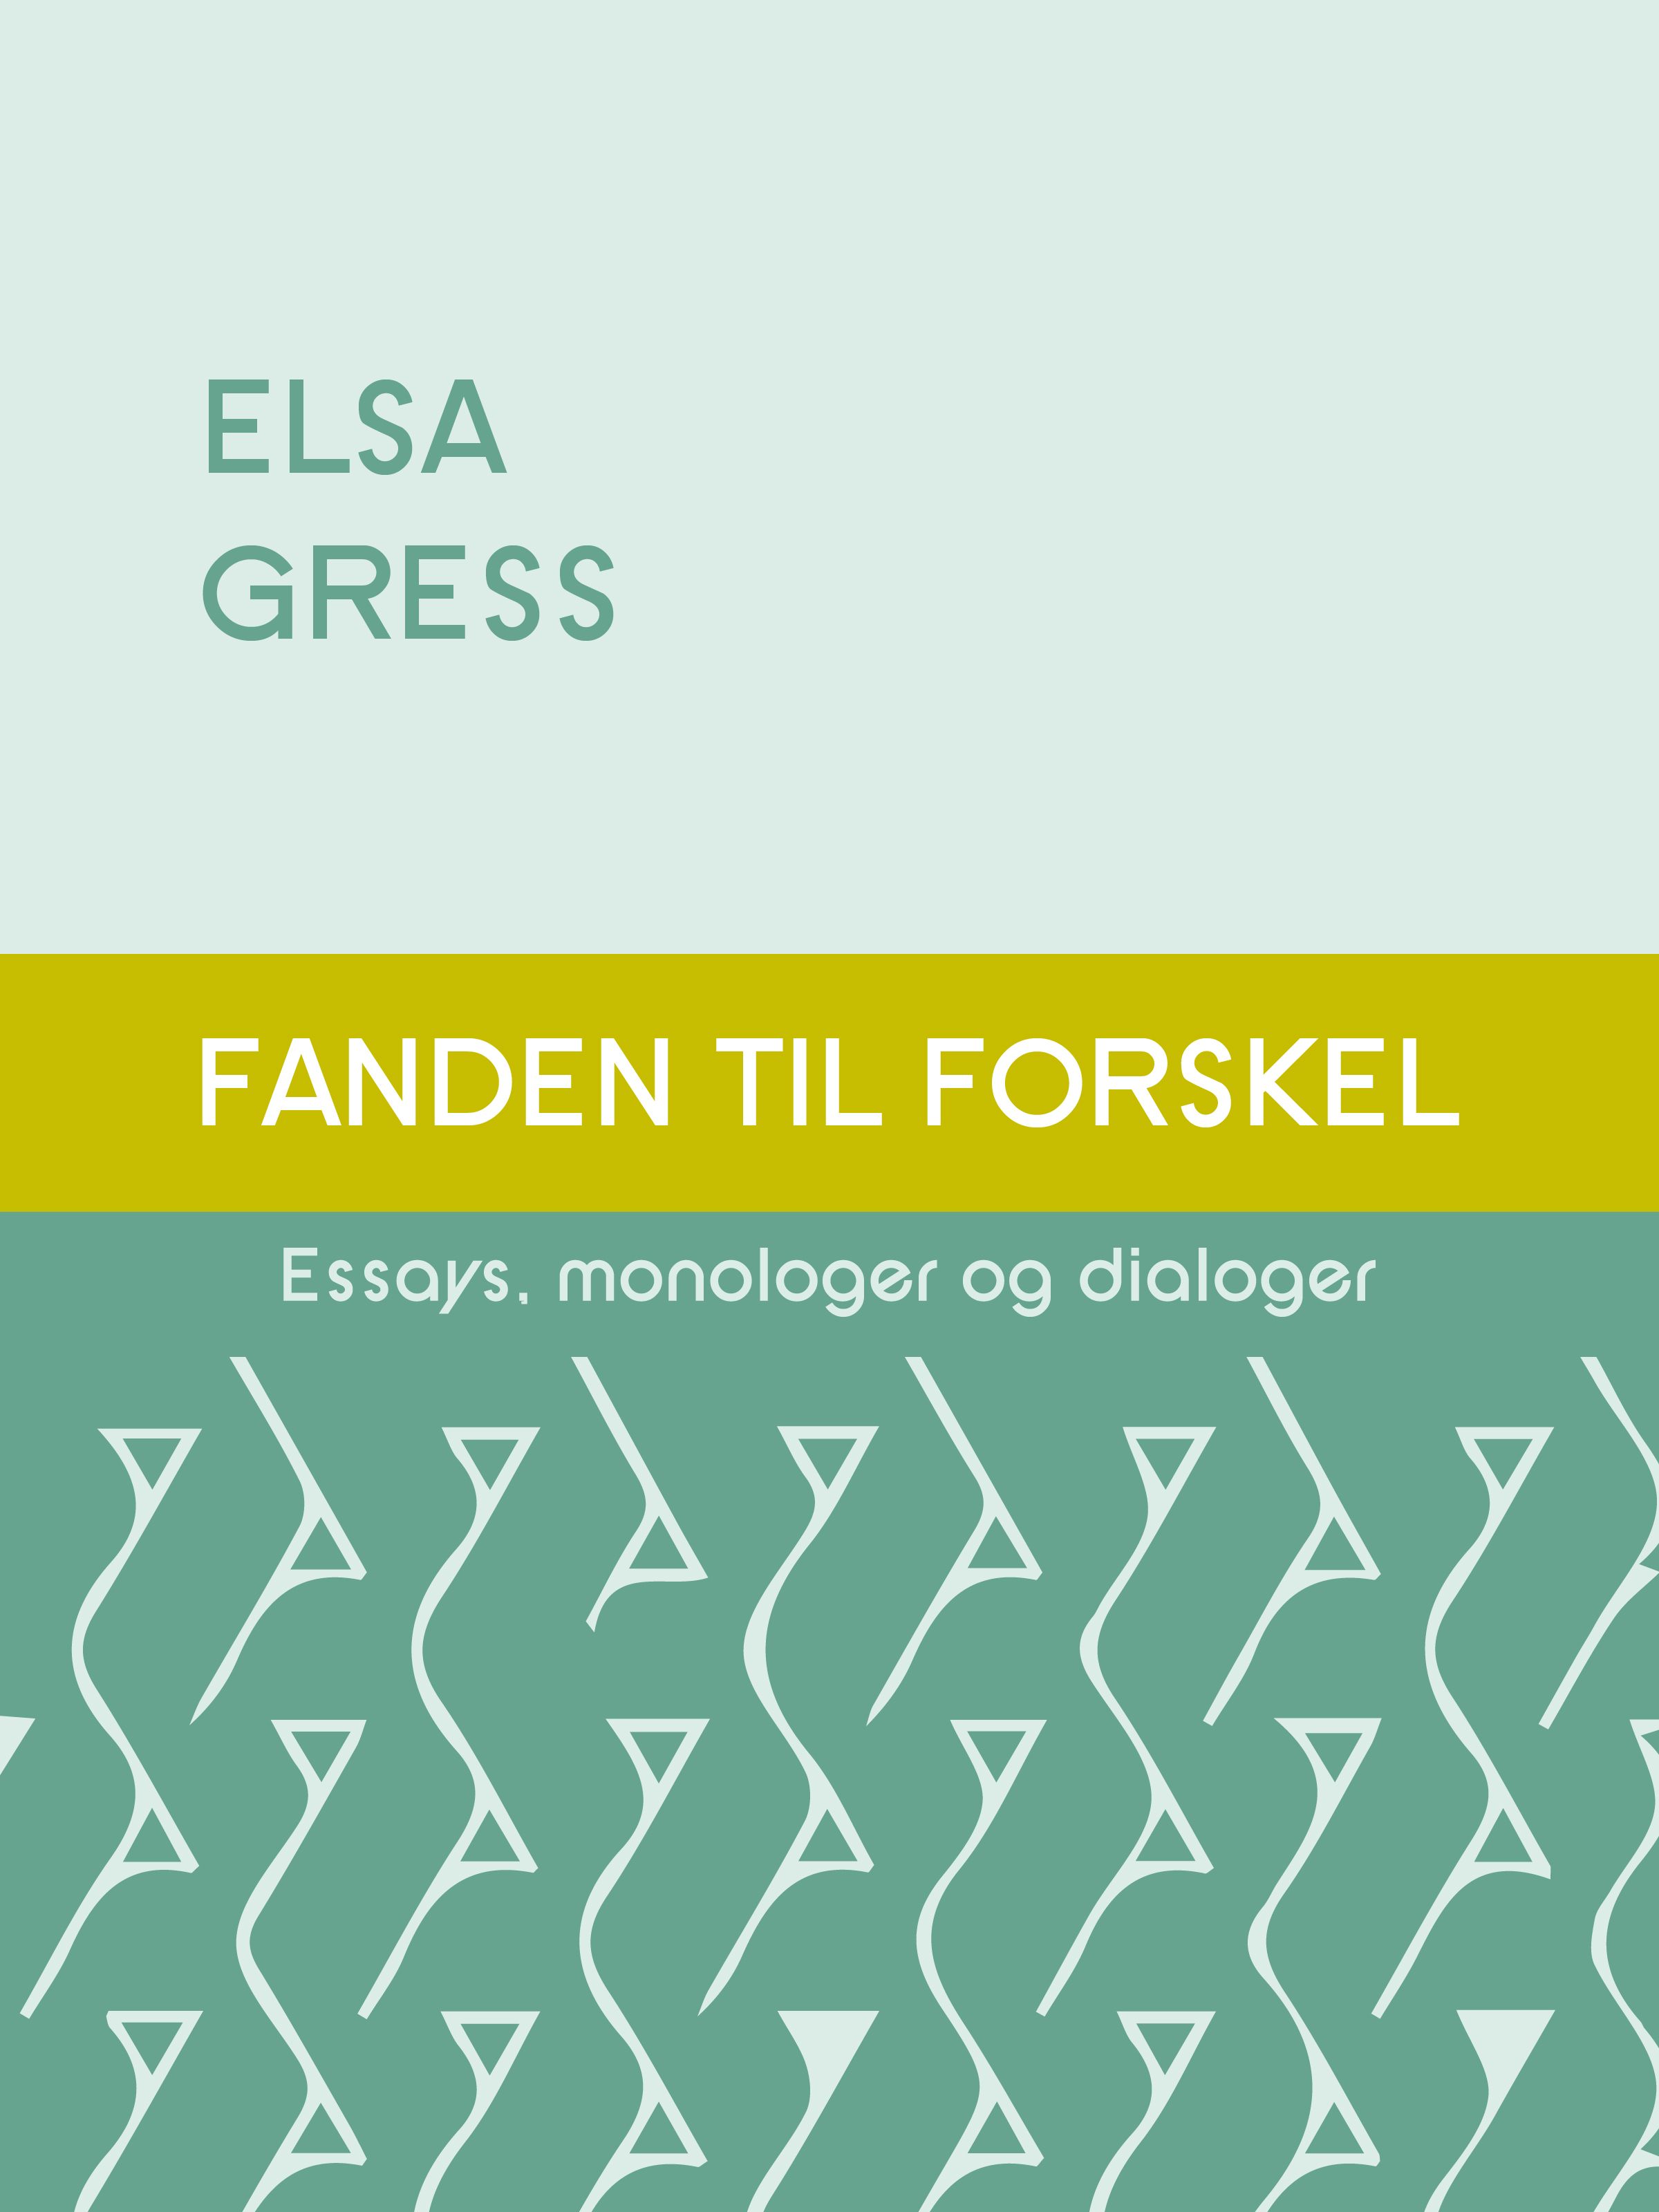 Fanden til forskel - Essays, monologer og dialoger, e-bok av Elsa Gress